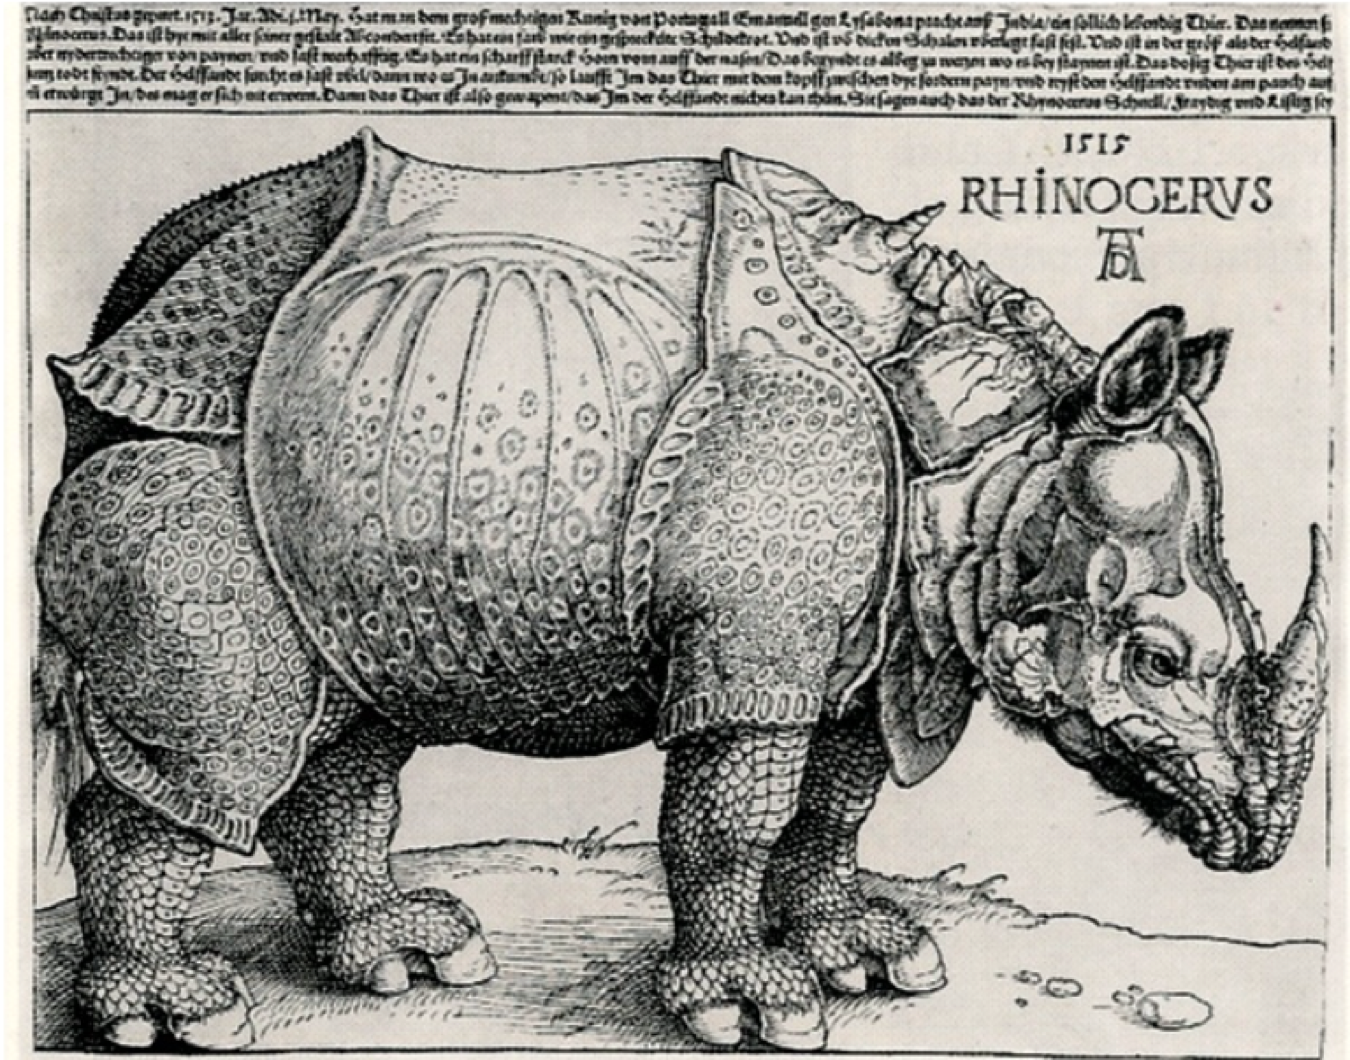 Rhinocderous 